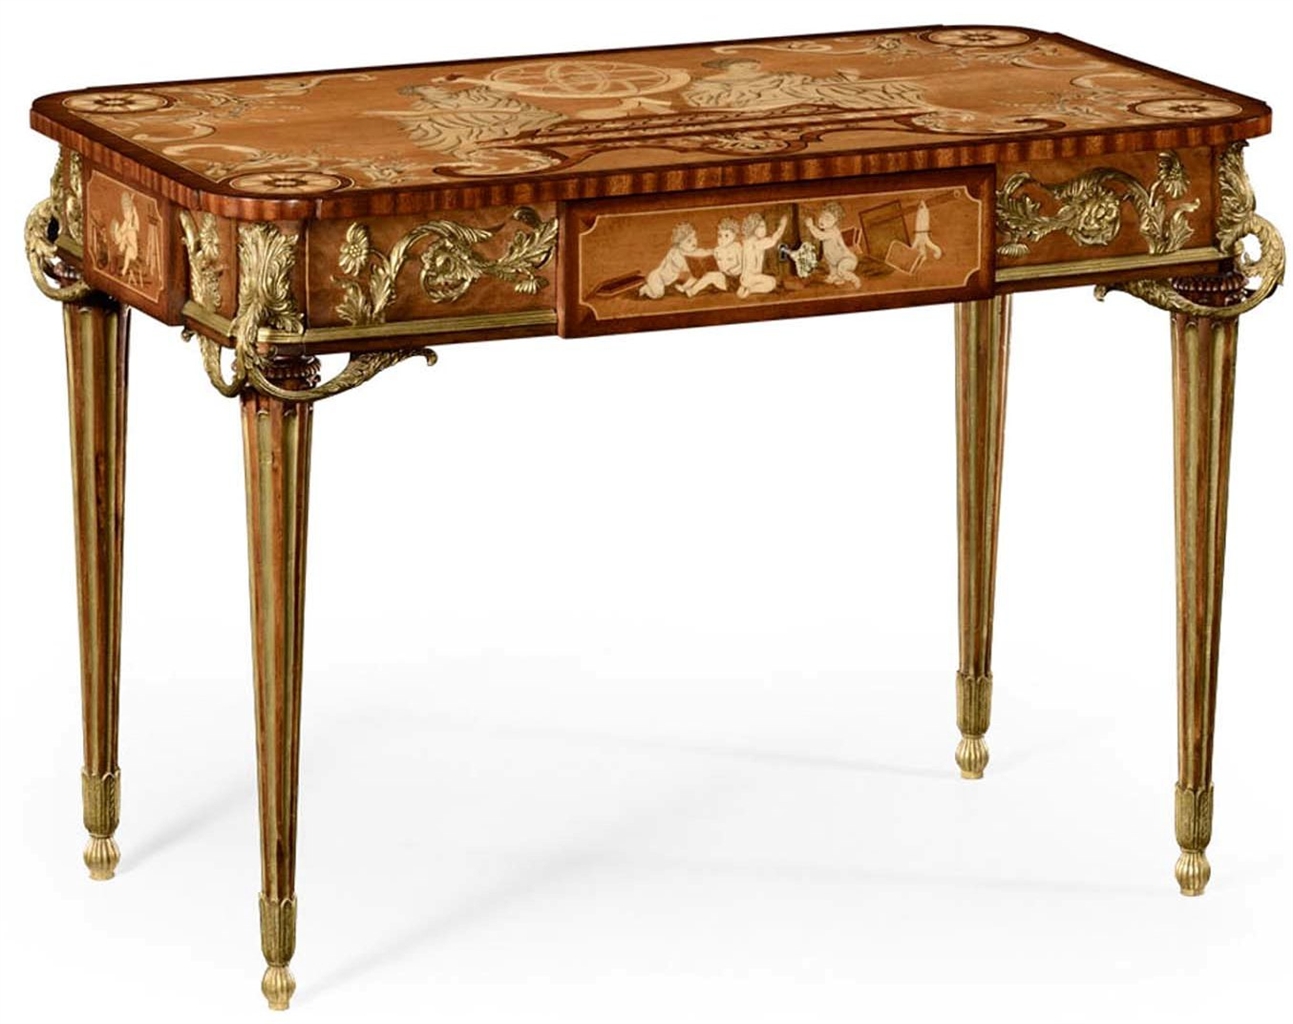 Executive Desks Classic antique reproduction furniture. Secrtaire cabinet